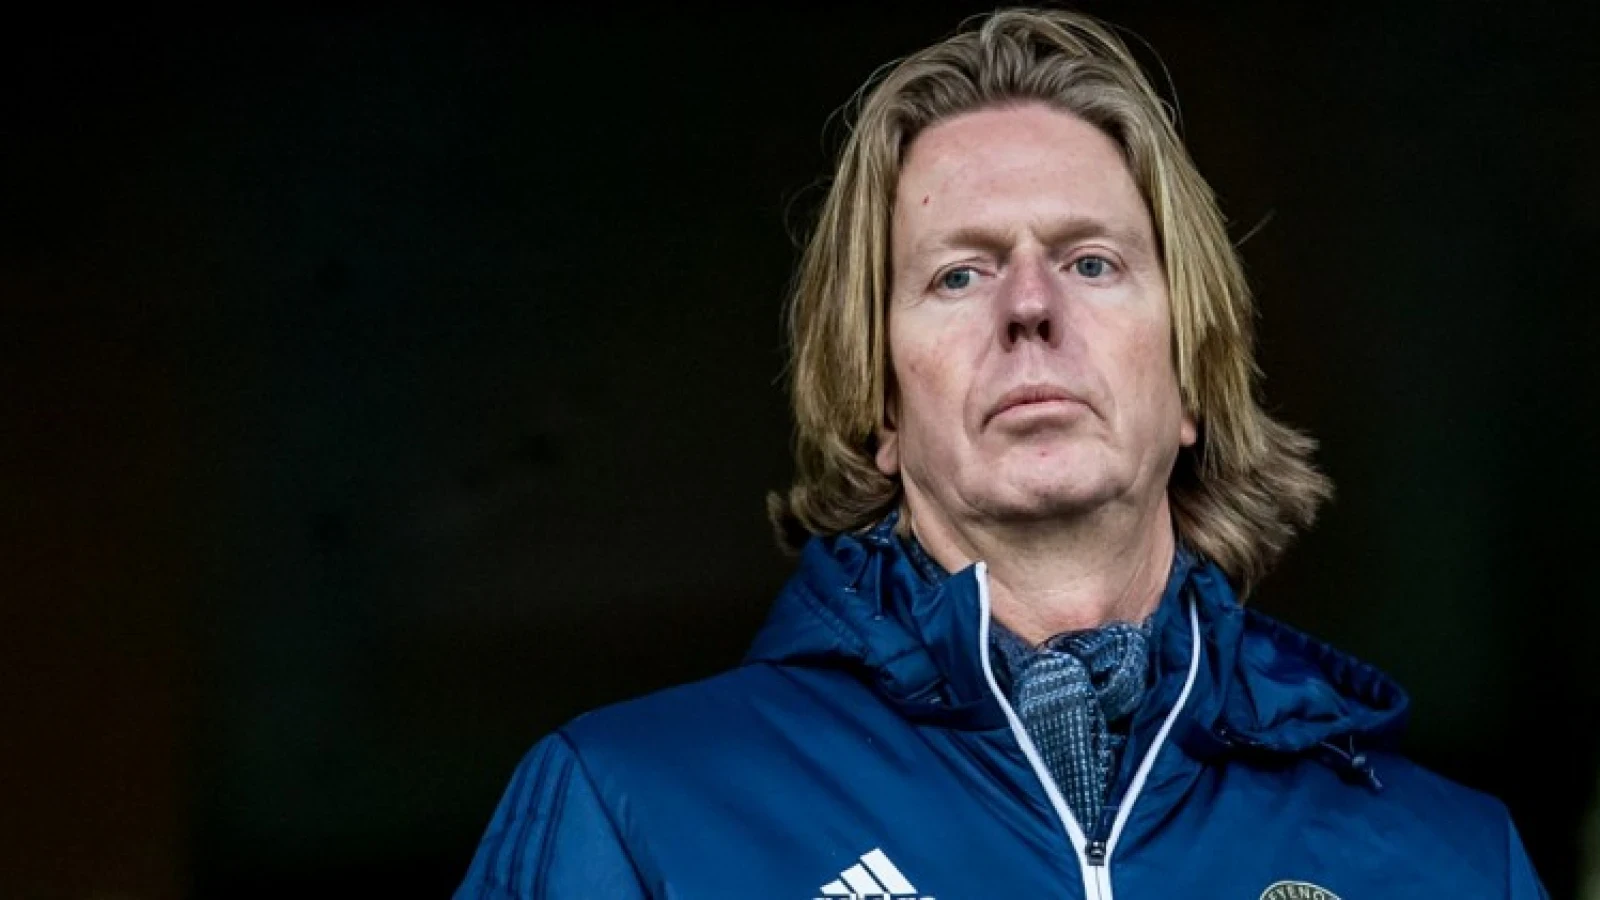 Kritiek op De Jong: 'Dat hij garandeert dat Feyenoord tot 2023 op z'n minst Europa League speelt, dát zou stoer zijn'